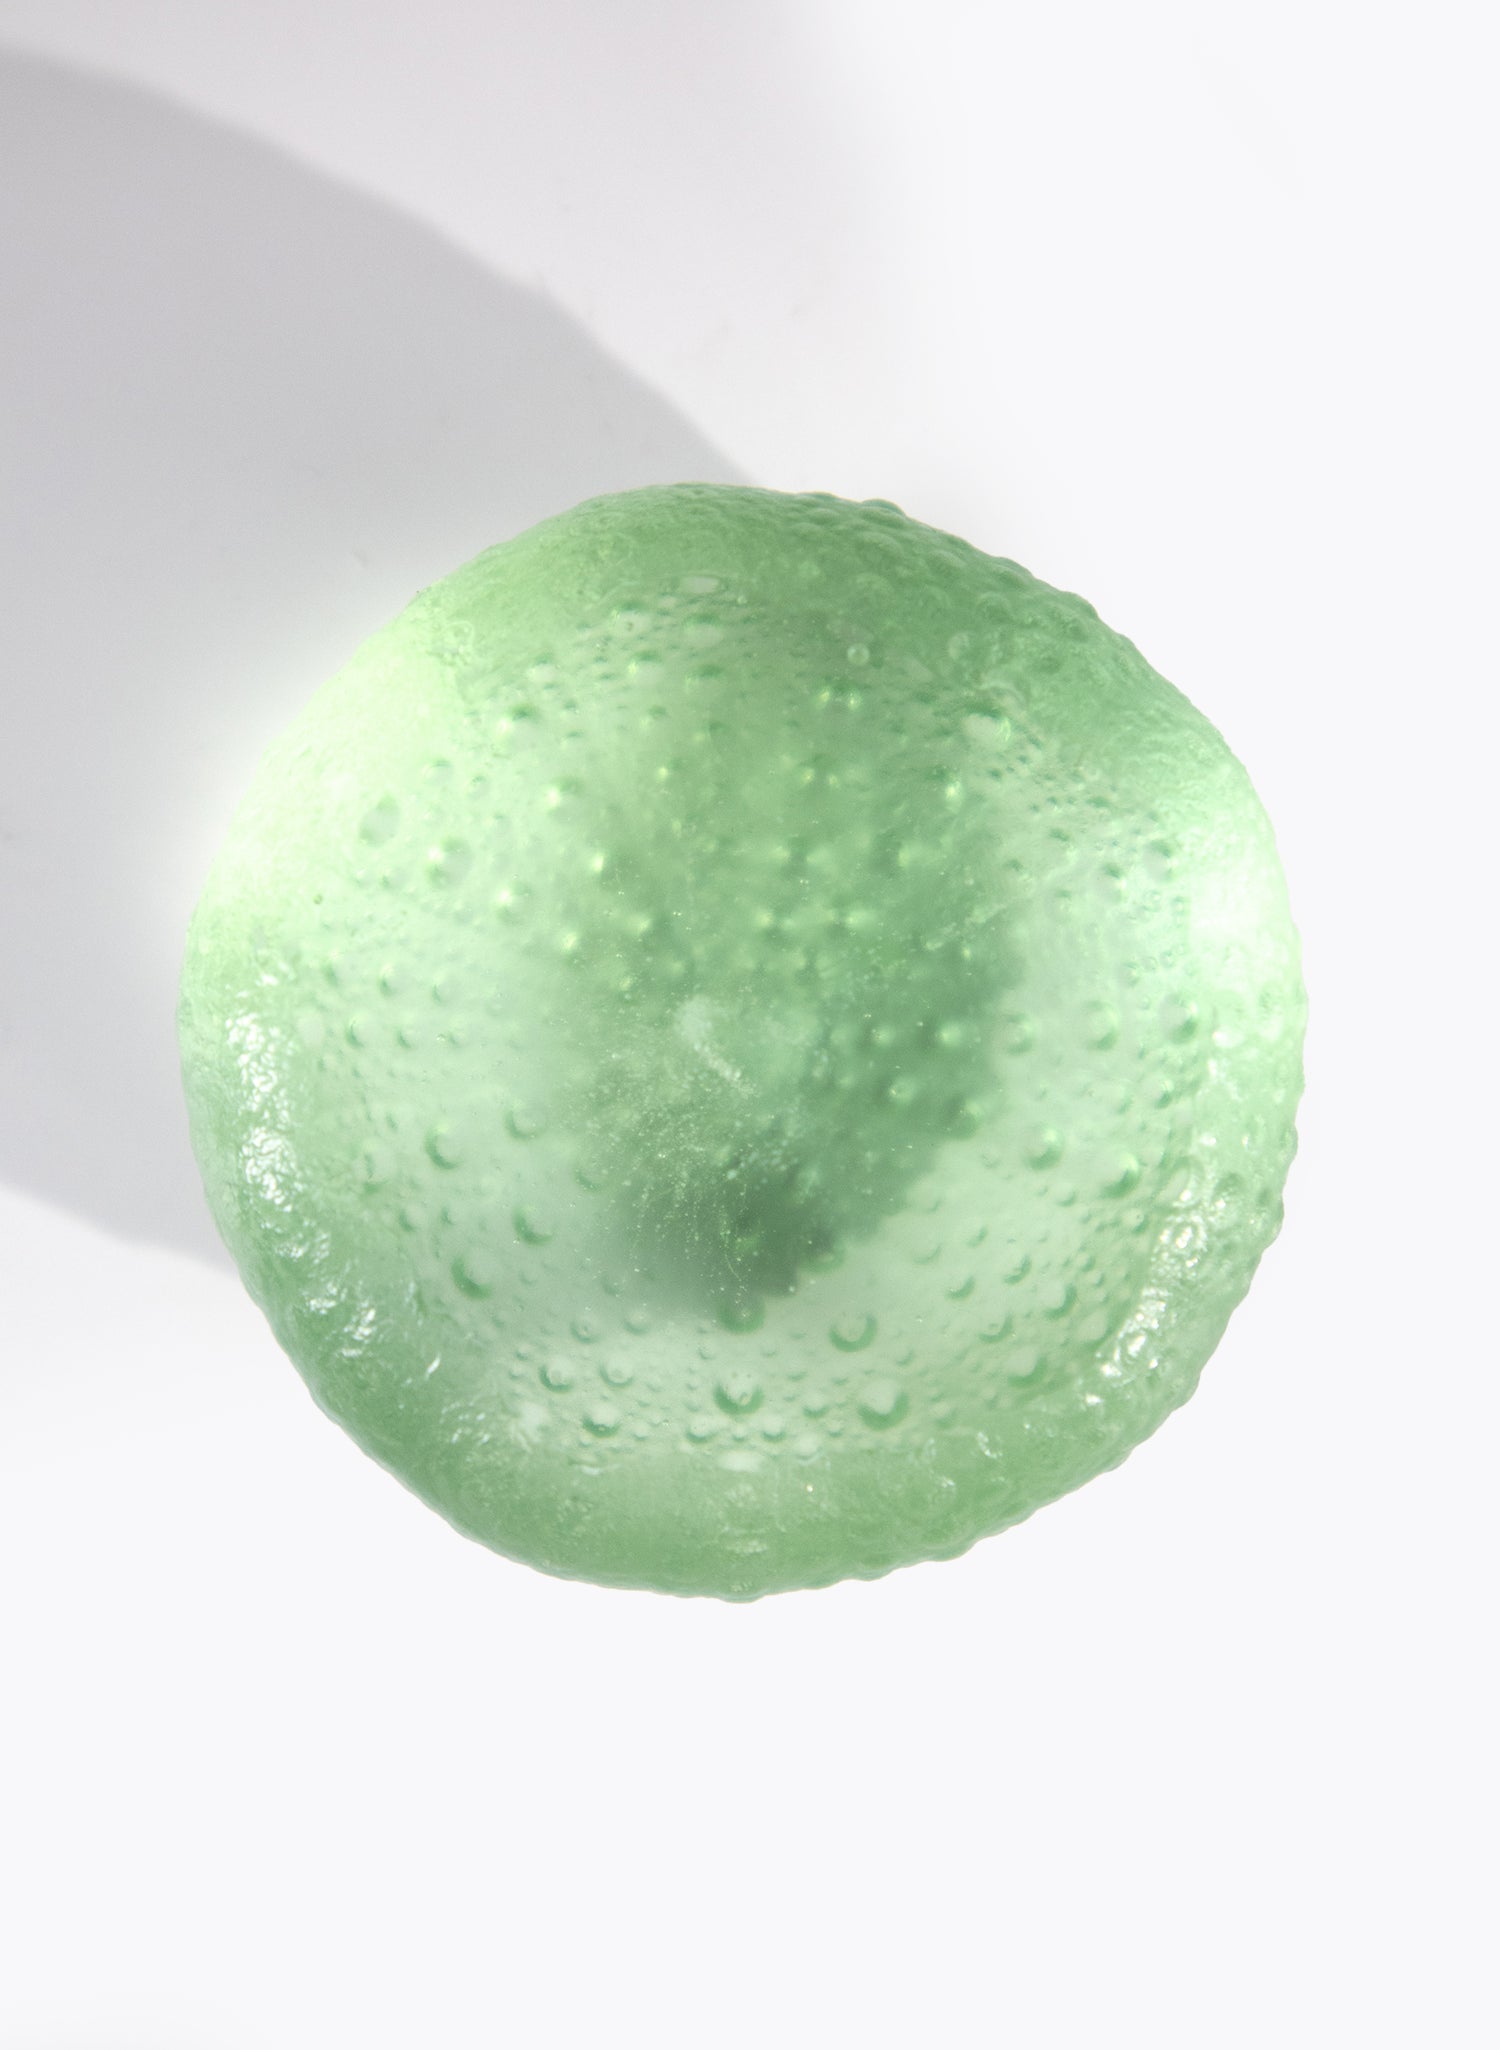 Medium Sea Urchin - Pale Emerald